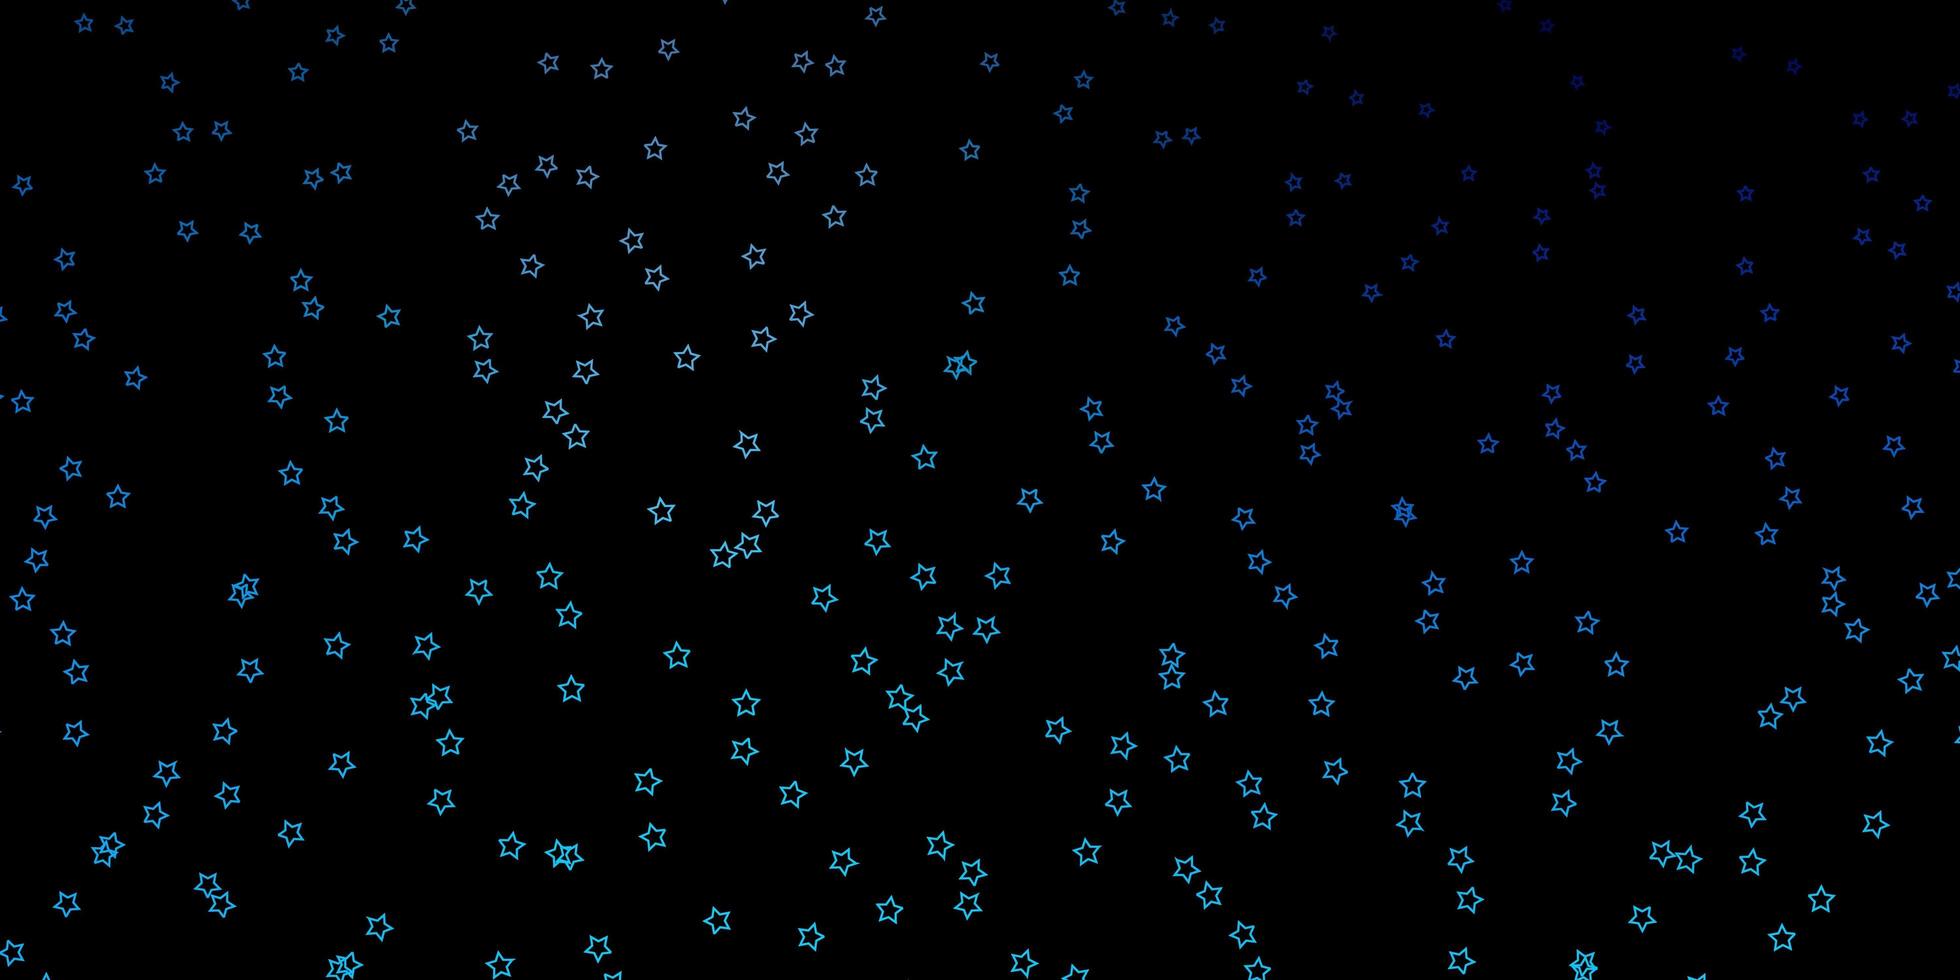 texture de vecteur bleu foncé avec de belles étoiles. illustration abstraite géométrique moderne avec des étoiles. conception pour la promotion de votre entreprise.